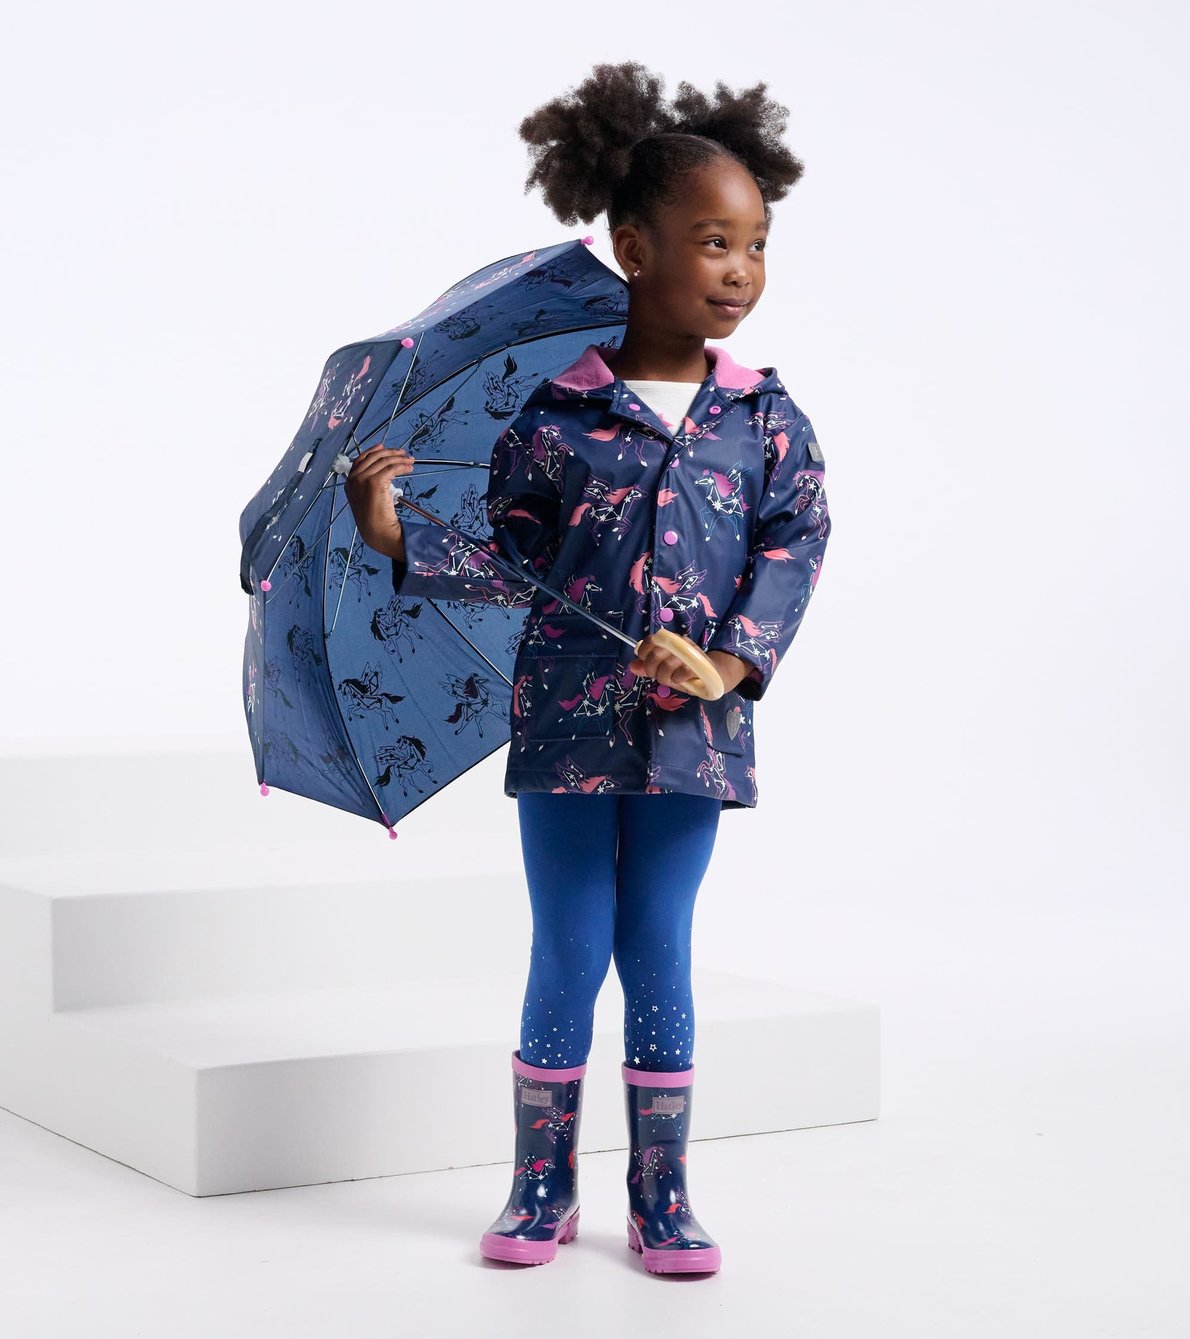 Agrandir l'image de Parapluie à couleur changeante pour enfant – Constellations de pégases